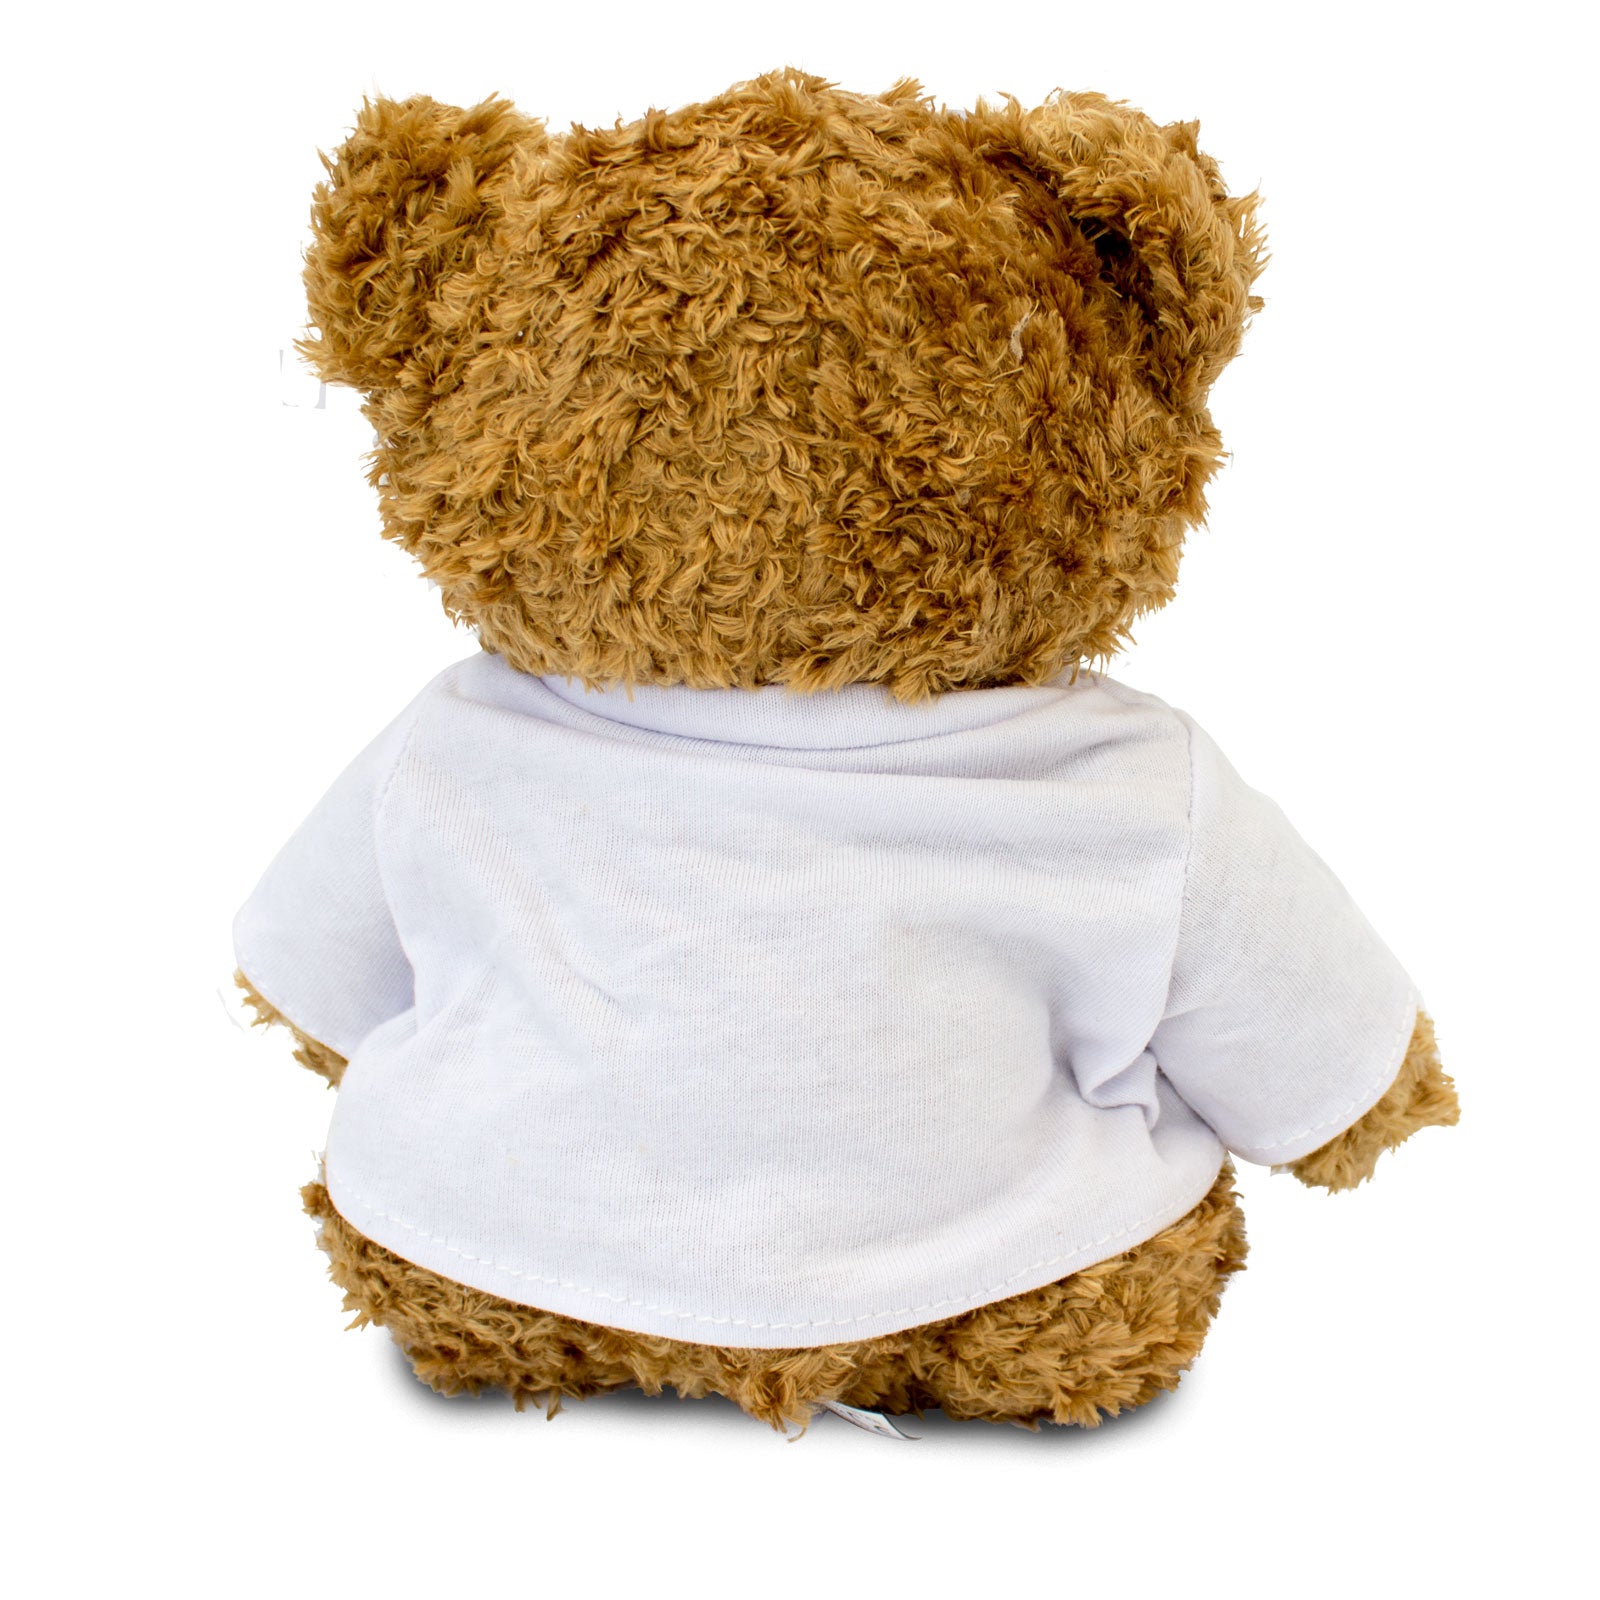 Get Well Soon Chanel - Teddy Bear